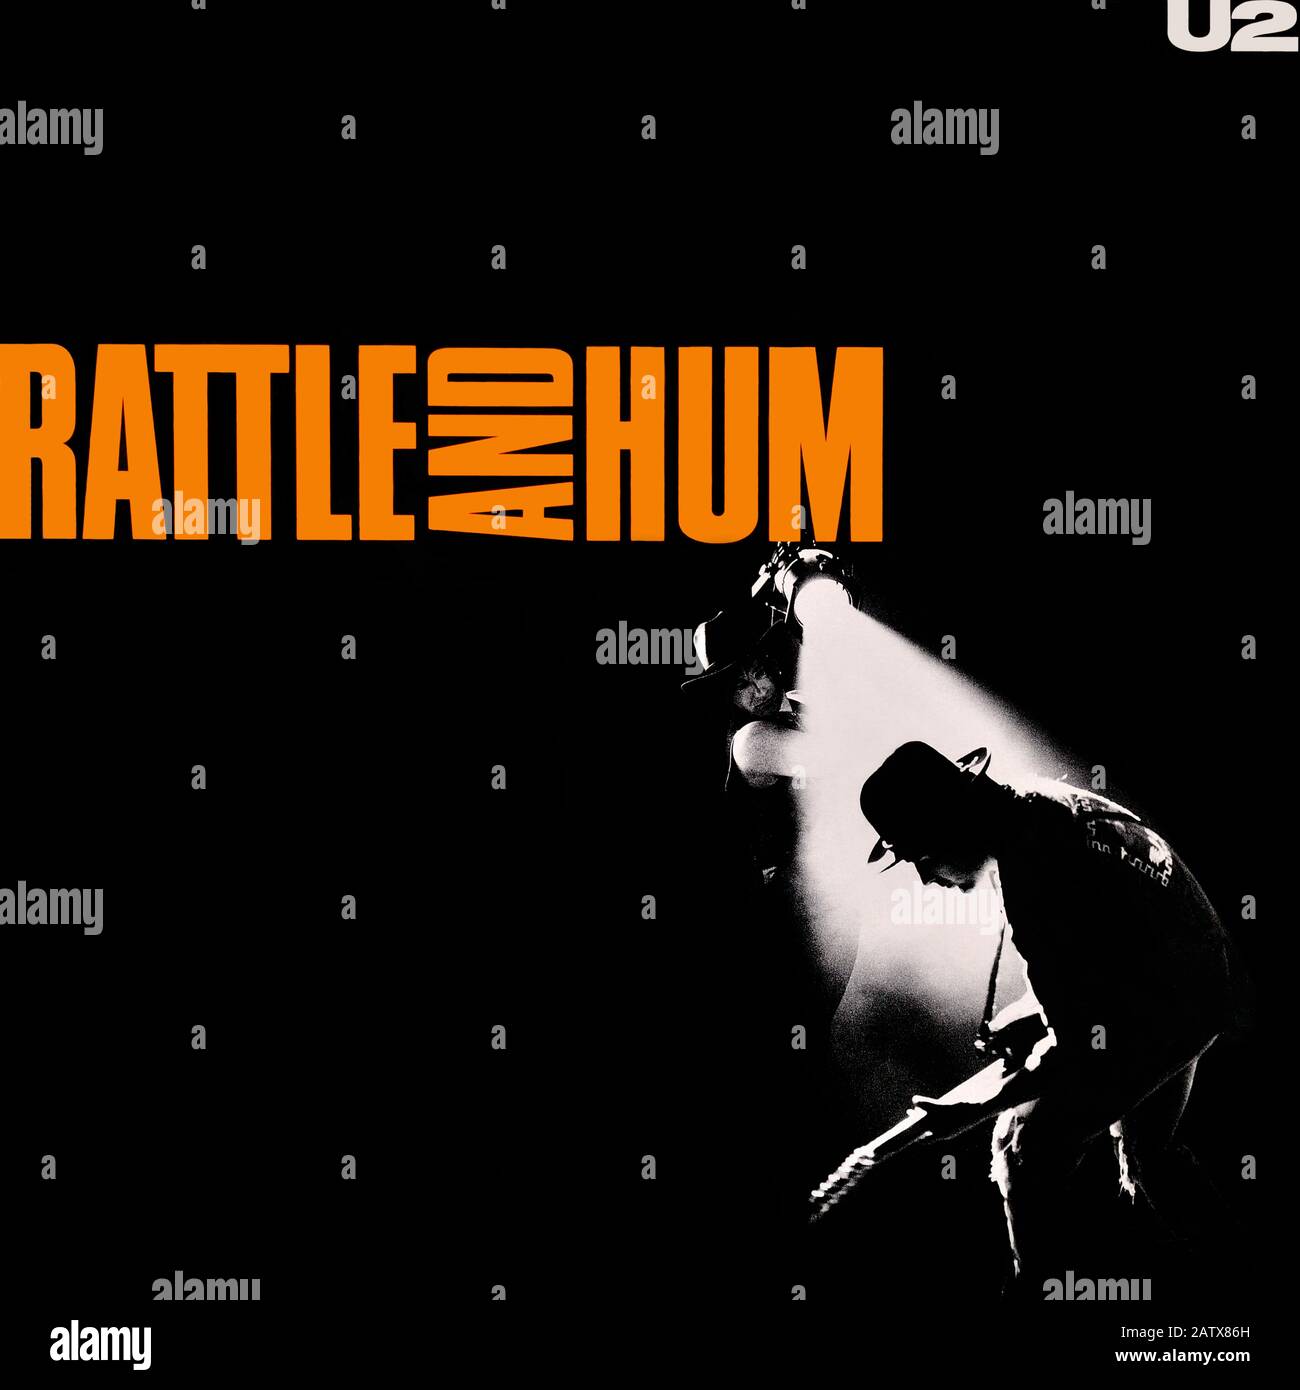 U2 - original vinyl album cover - Rattle And Hum - 1988 Stock Photo